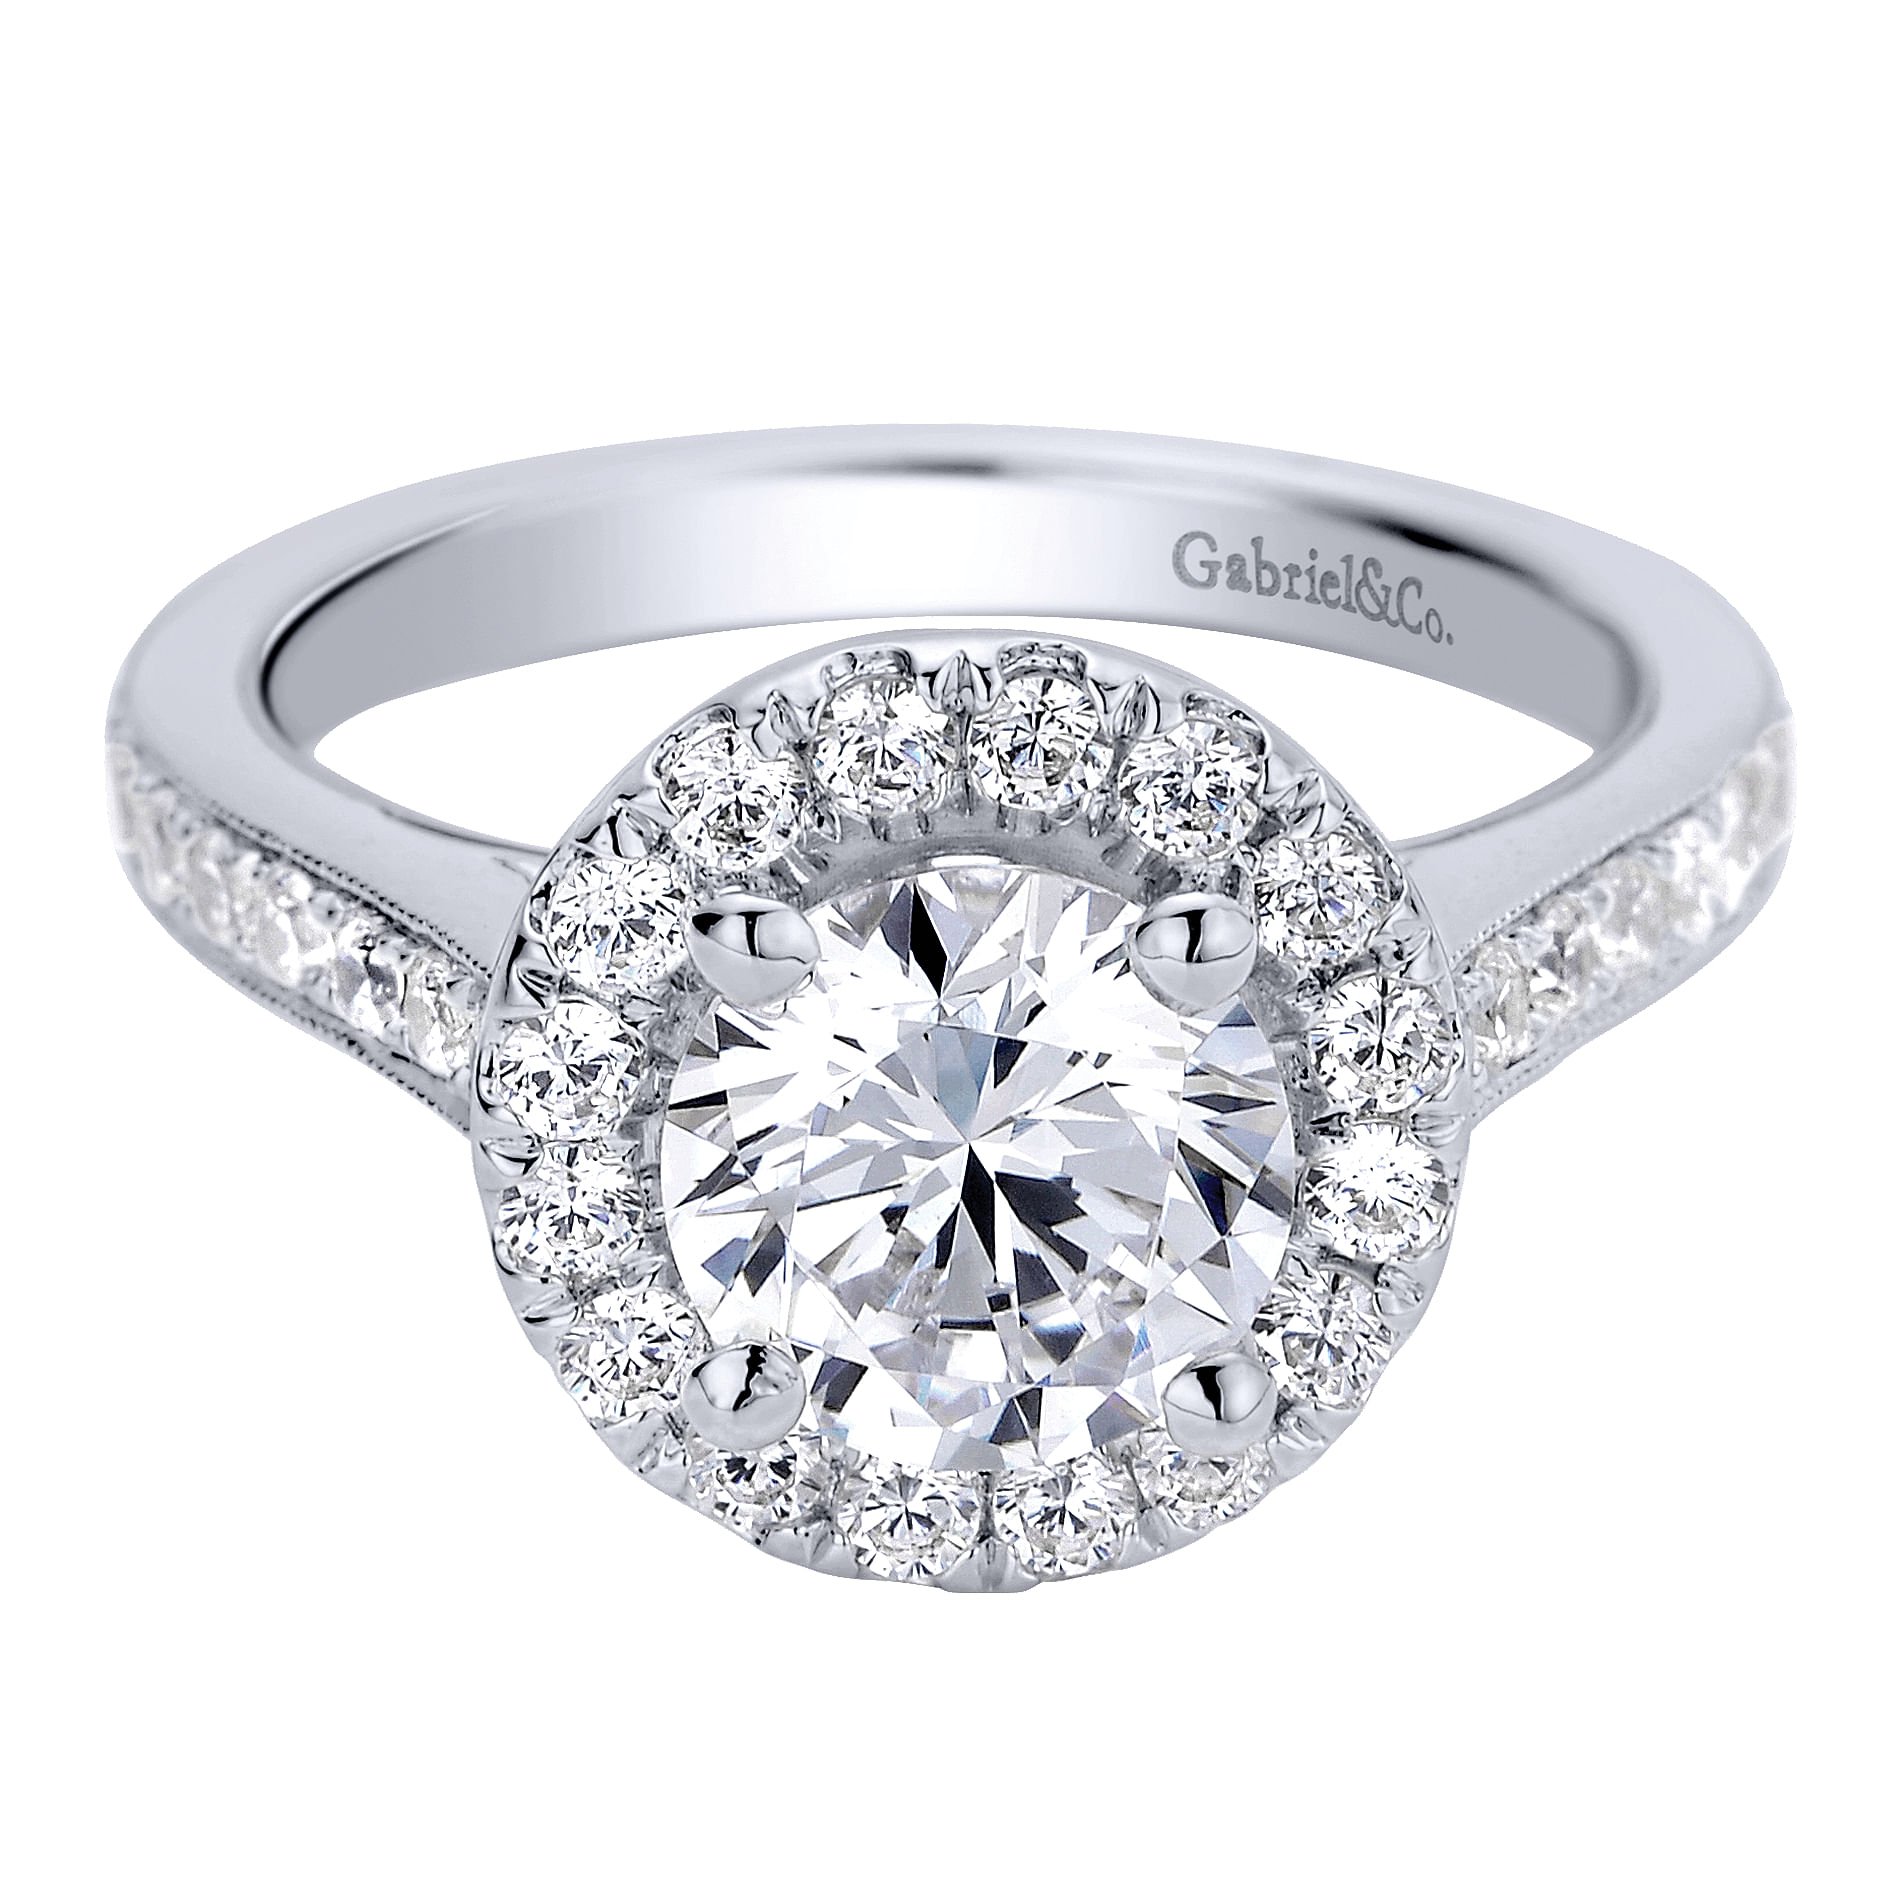 Bernadette - Vintage Inspired 14K White Gold Round Halo Diamond Engagement Ring